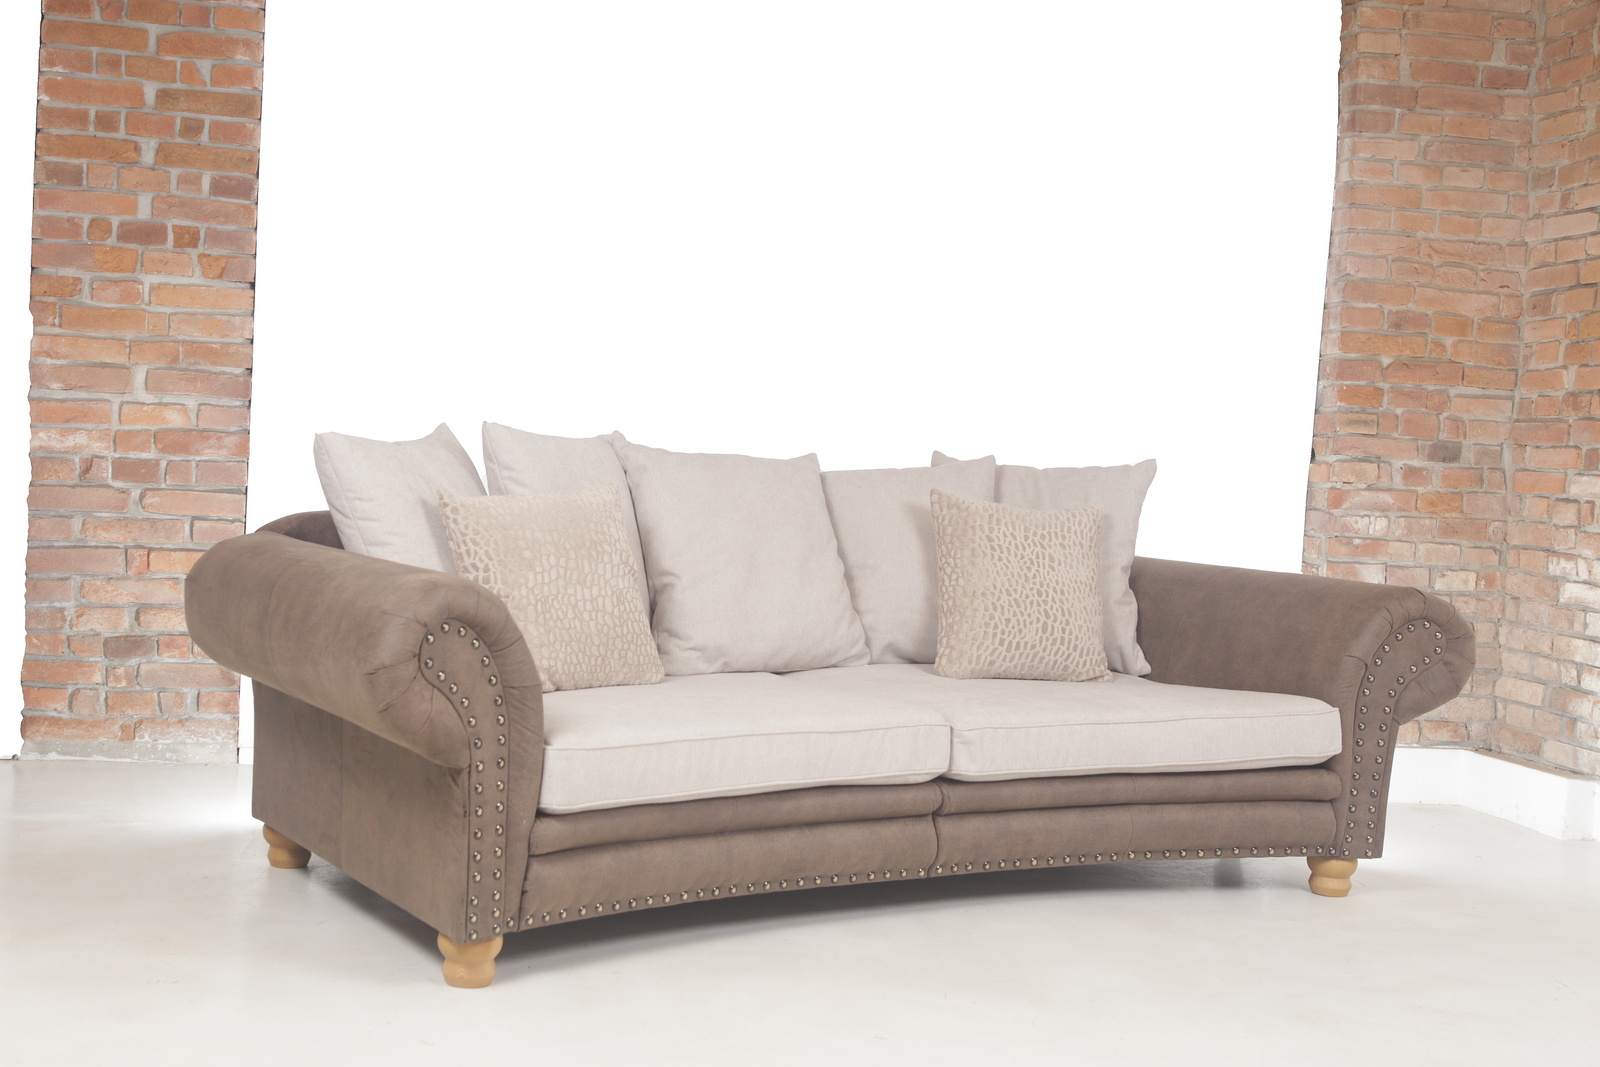 G859 chalet  pohovka sofa kvalitni kozena  gutmann factory   mg 9845